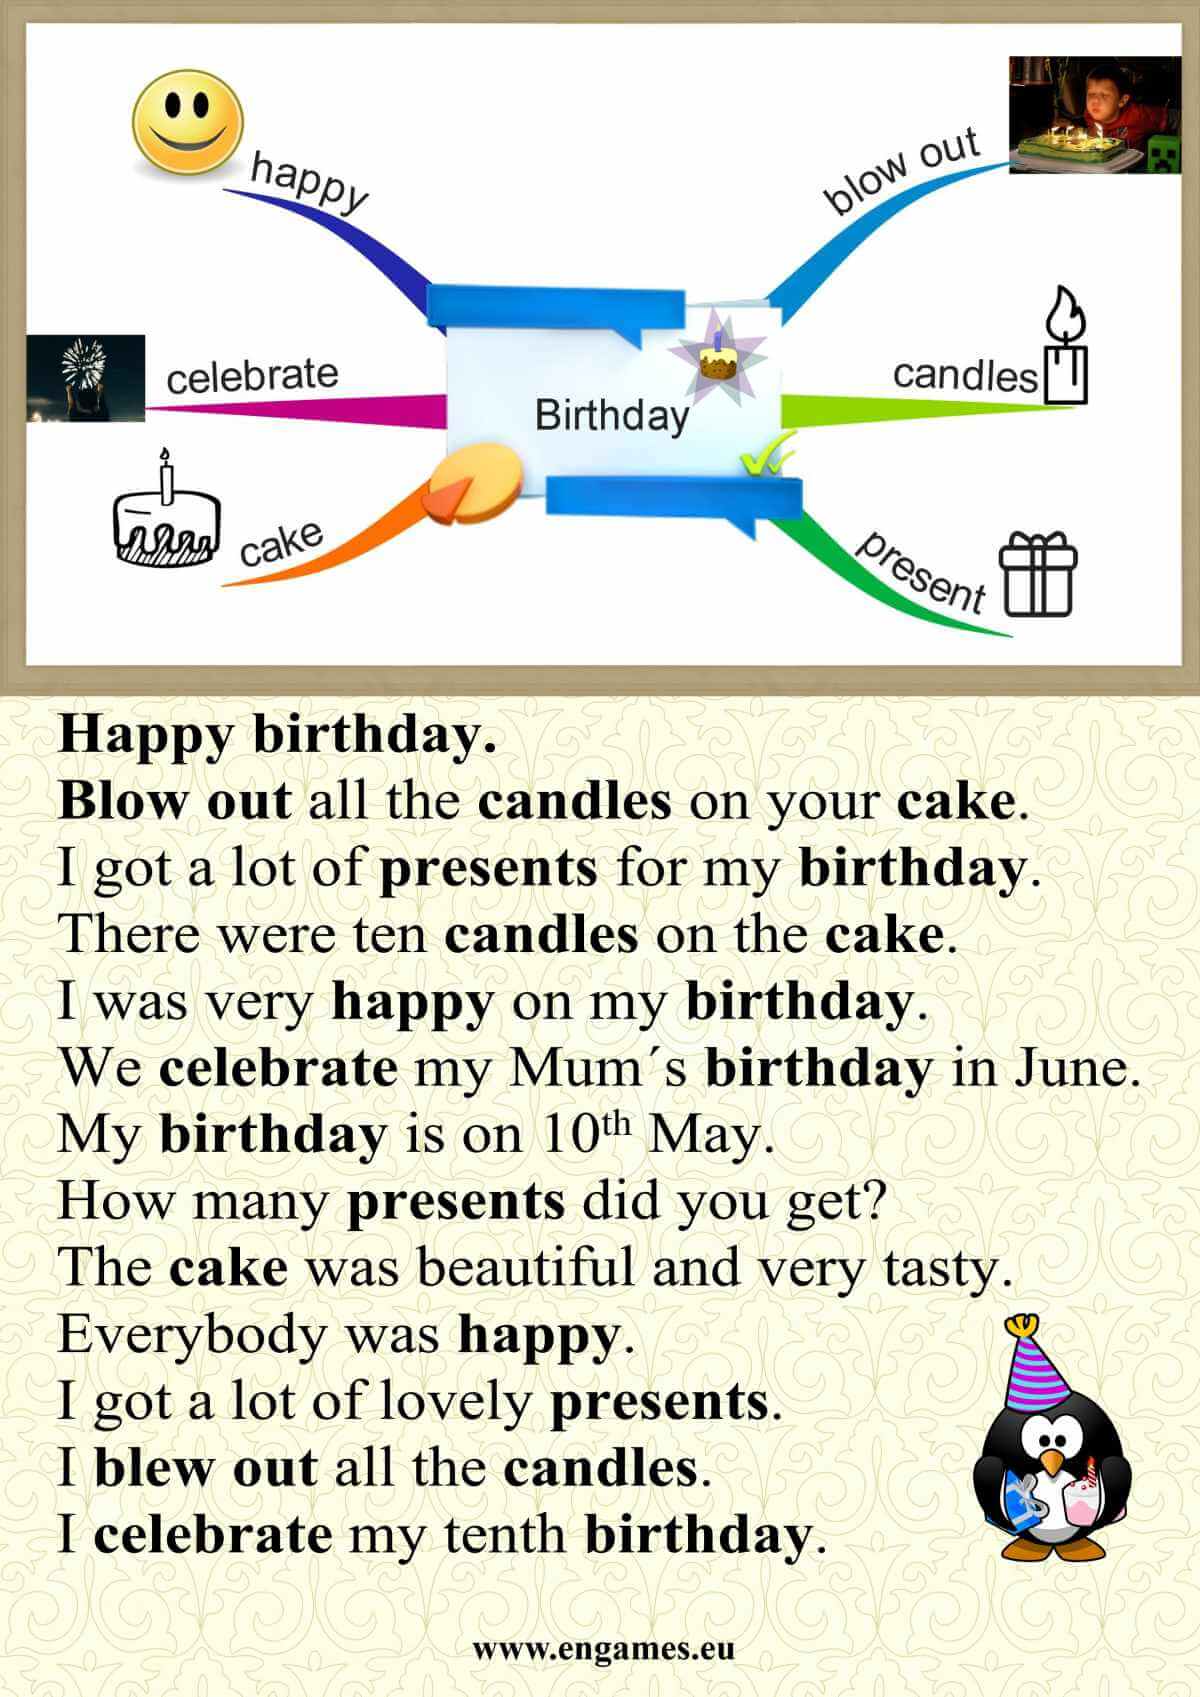 Birthday presentation web